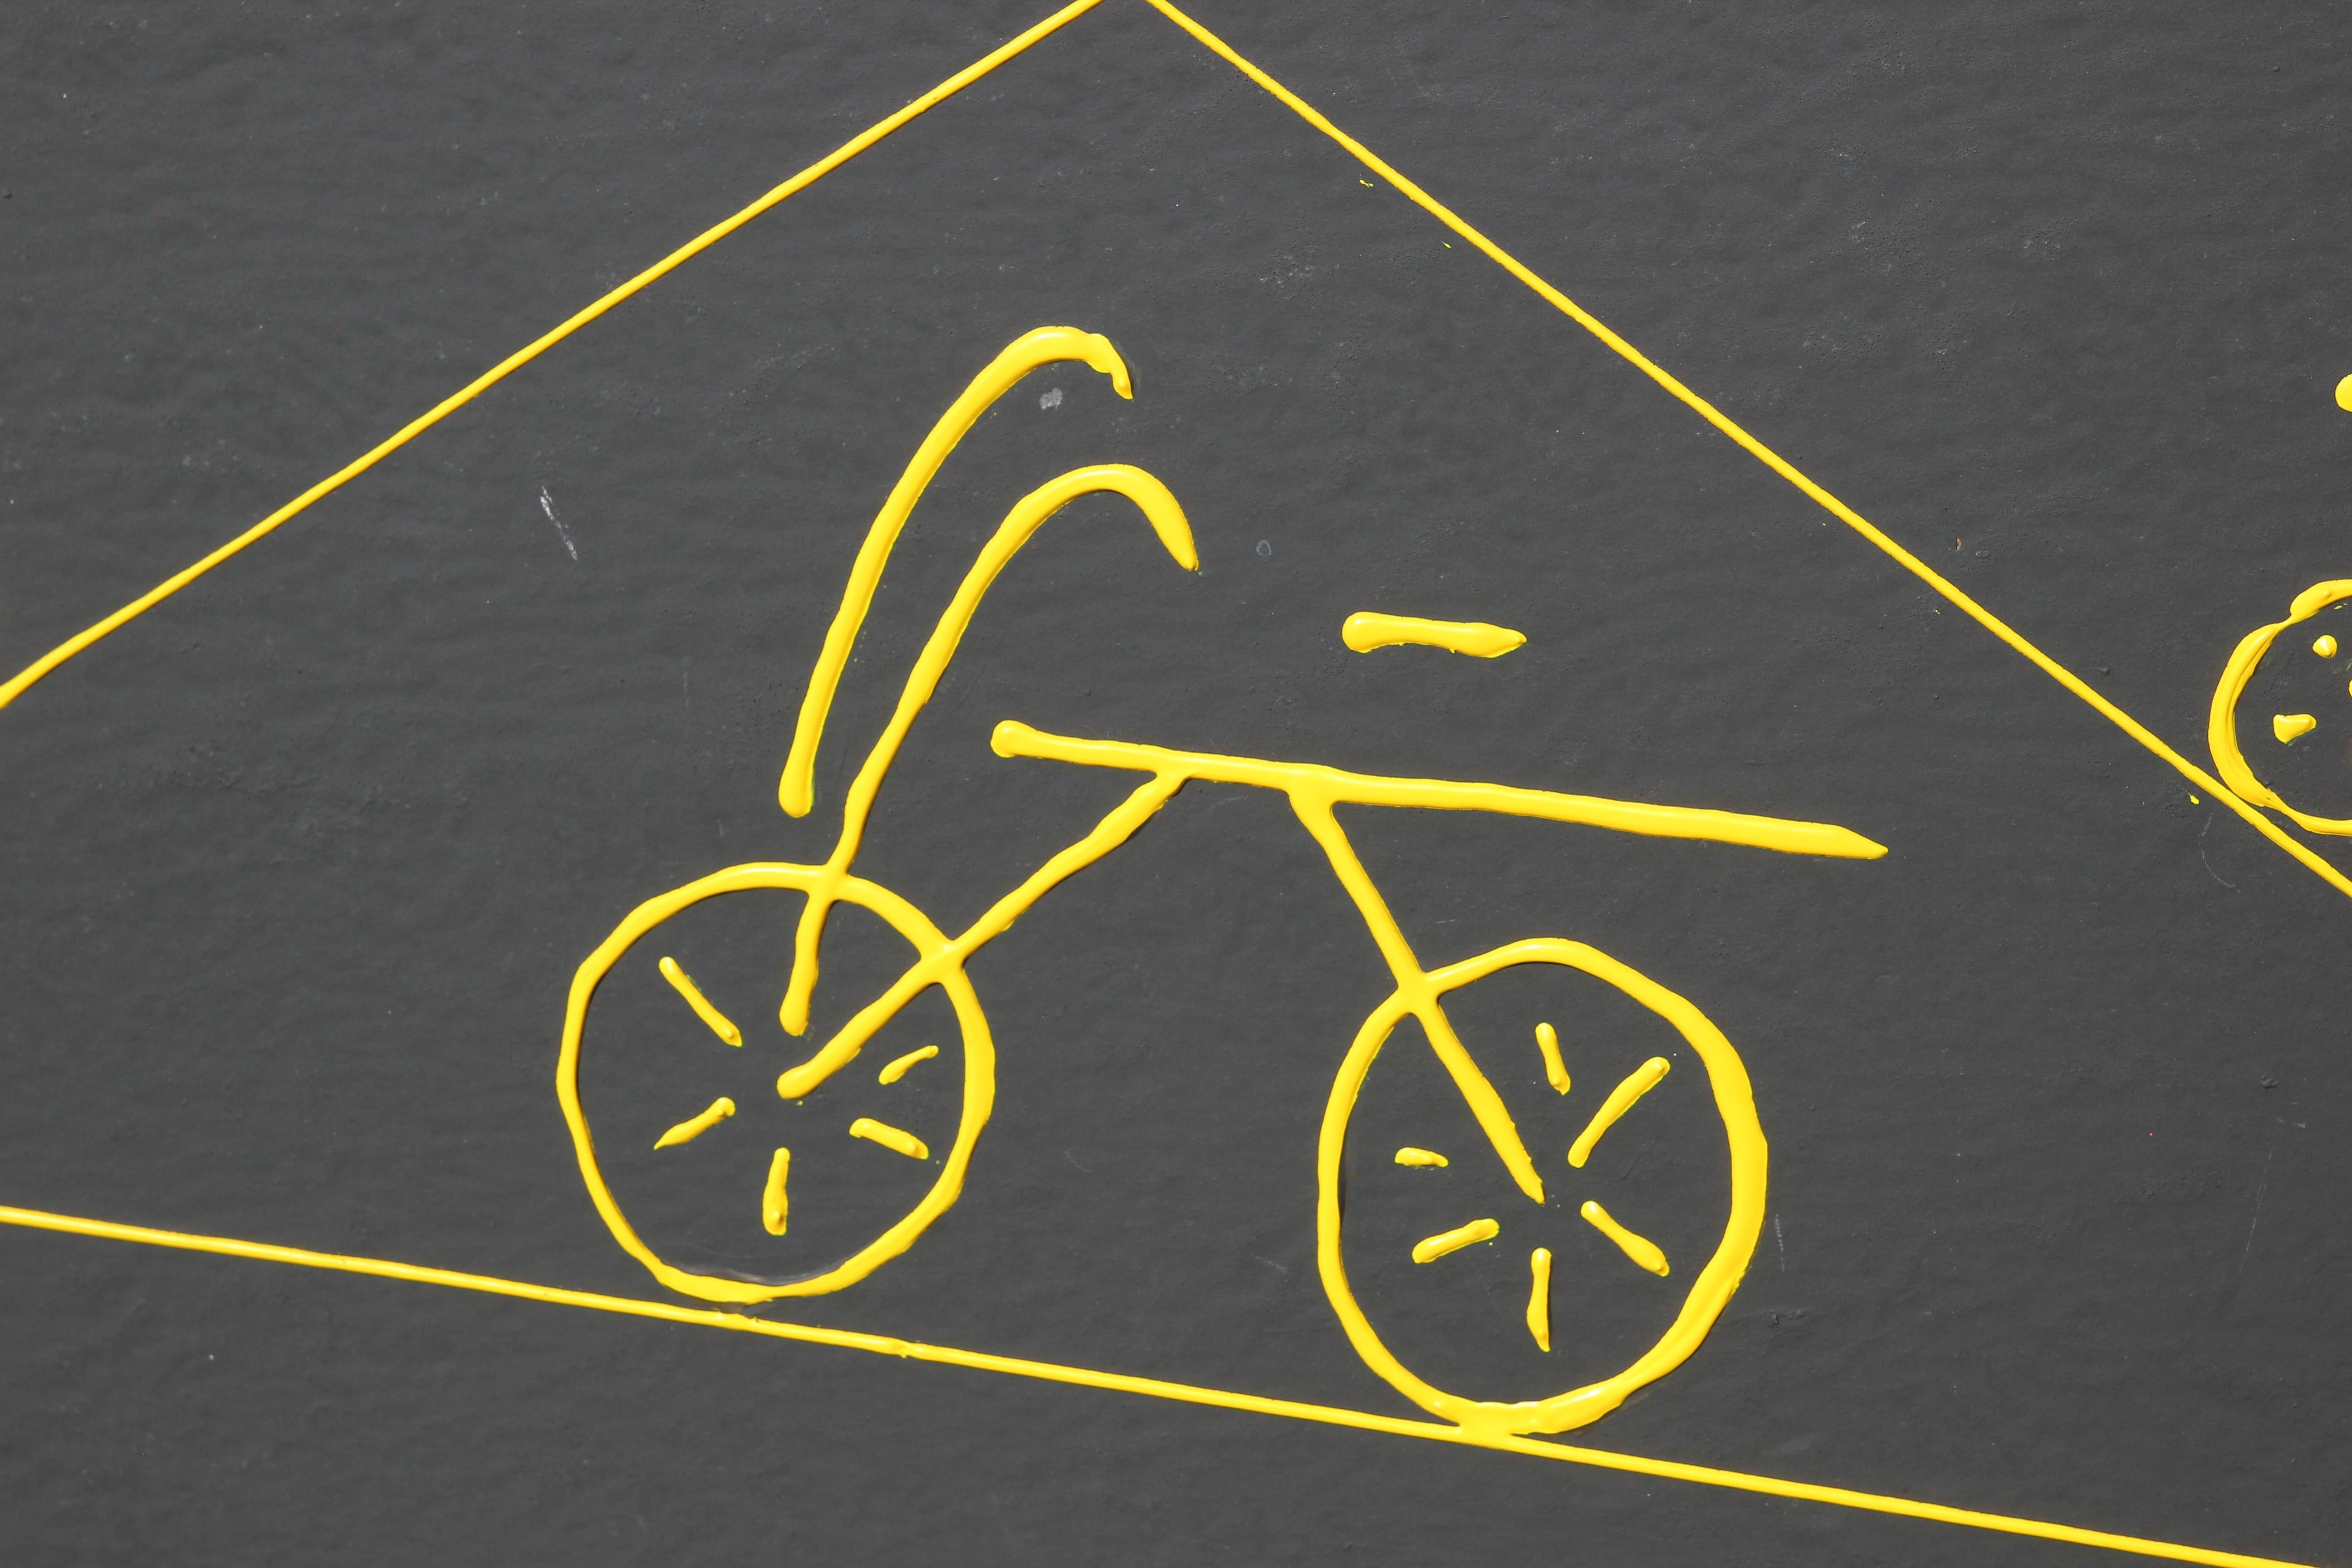 Grande peinture abstraite minimale noire, jaune et rouge avec des bicyclettes. L'œuvre est signée par l'artiste, Francis d'Estaing, dans le coin inférieur. L'œuvre est encadrée dans un cadre doré.
Dimensions sans cadre : H 31 in x L 47 in.